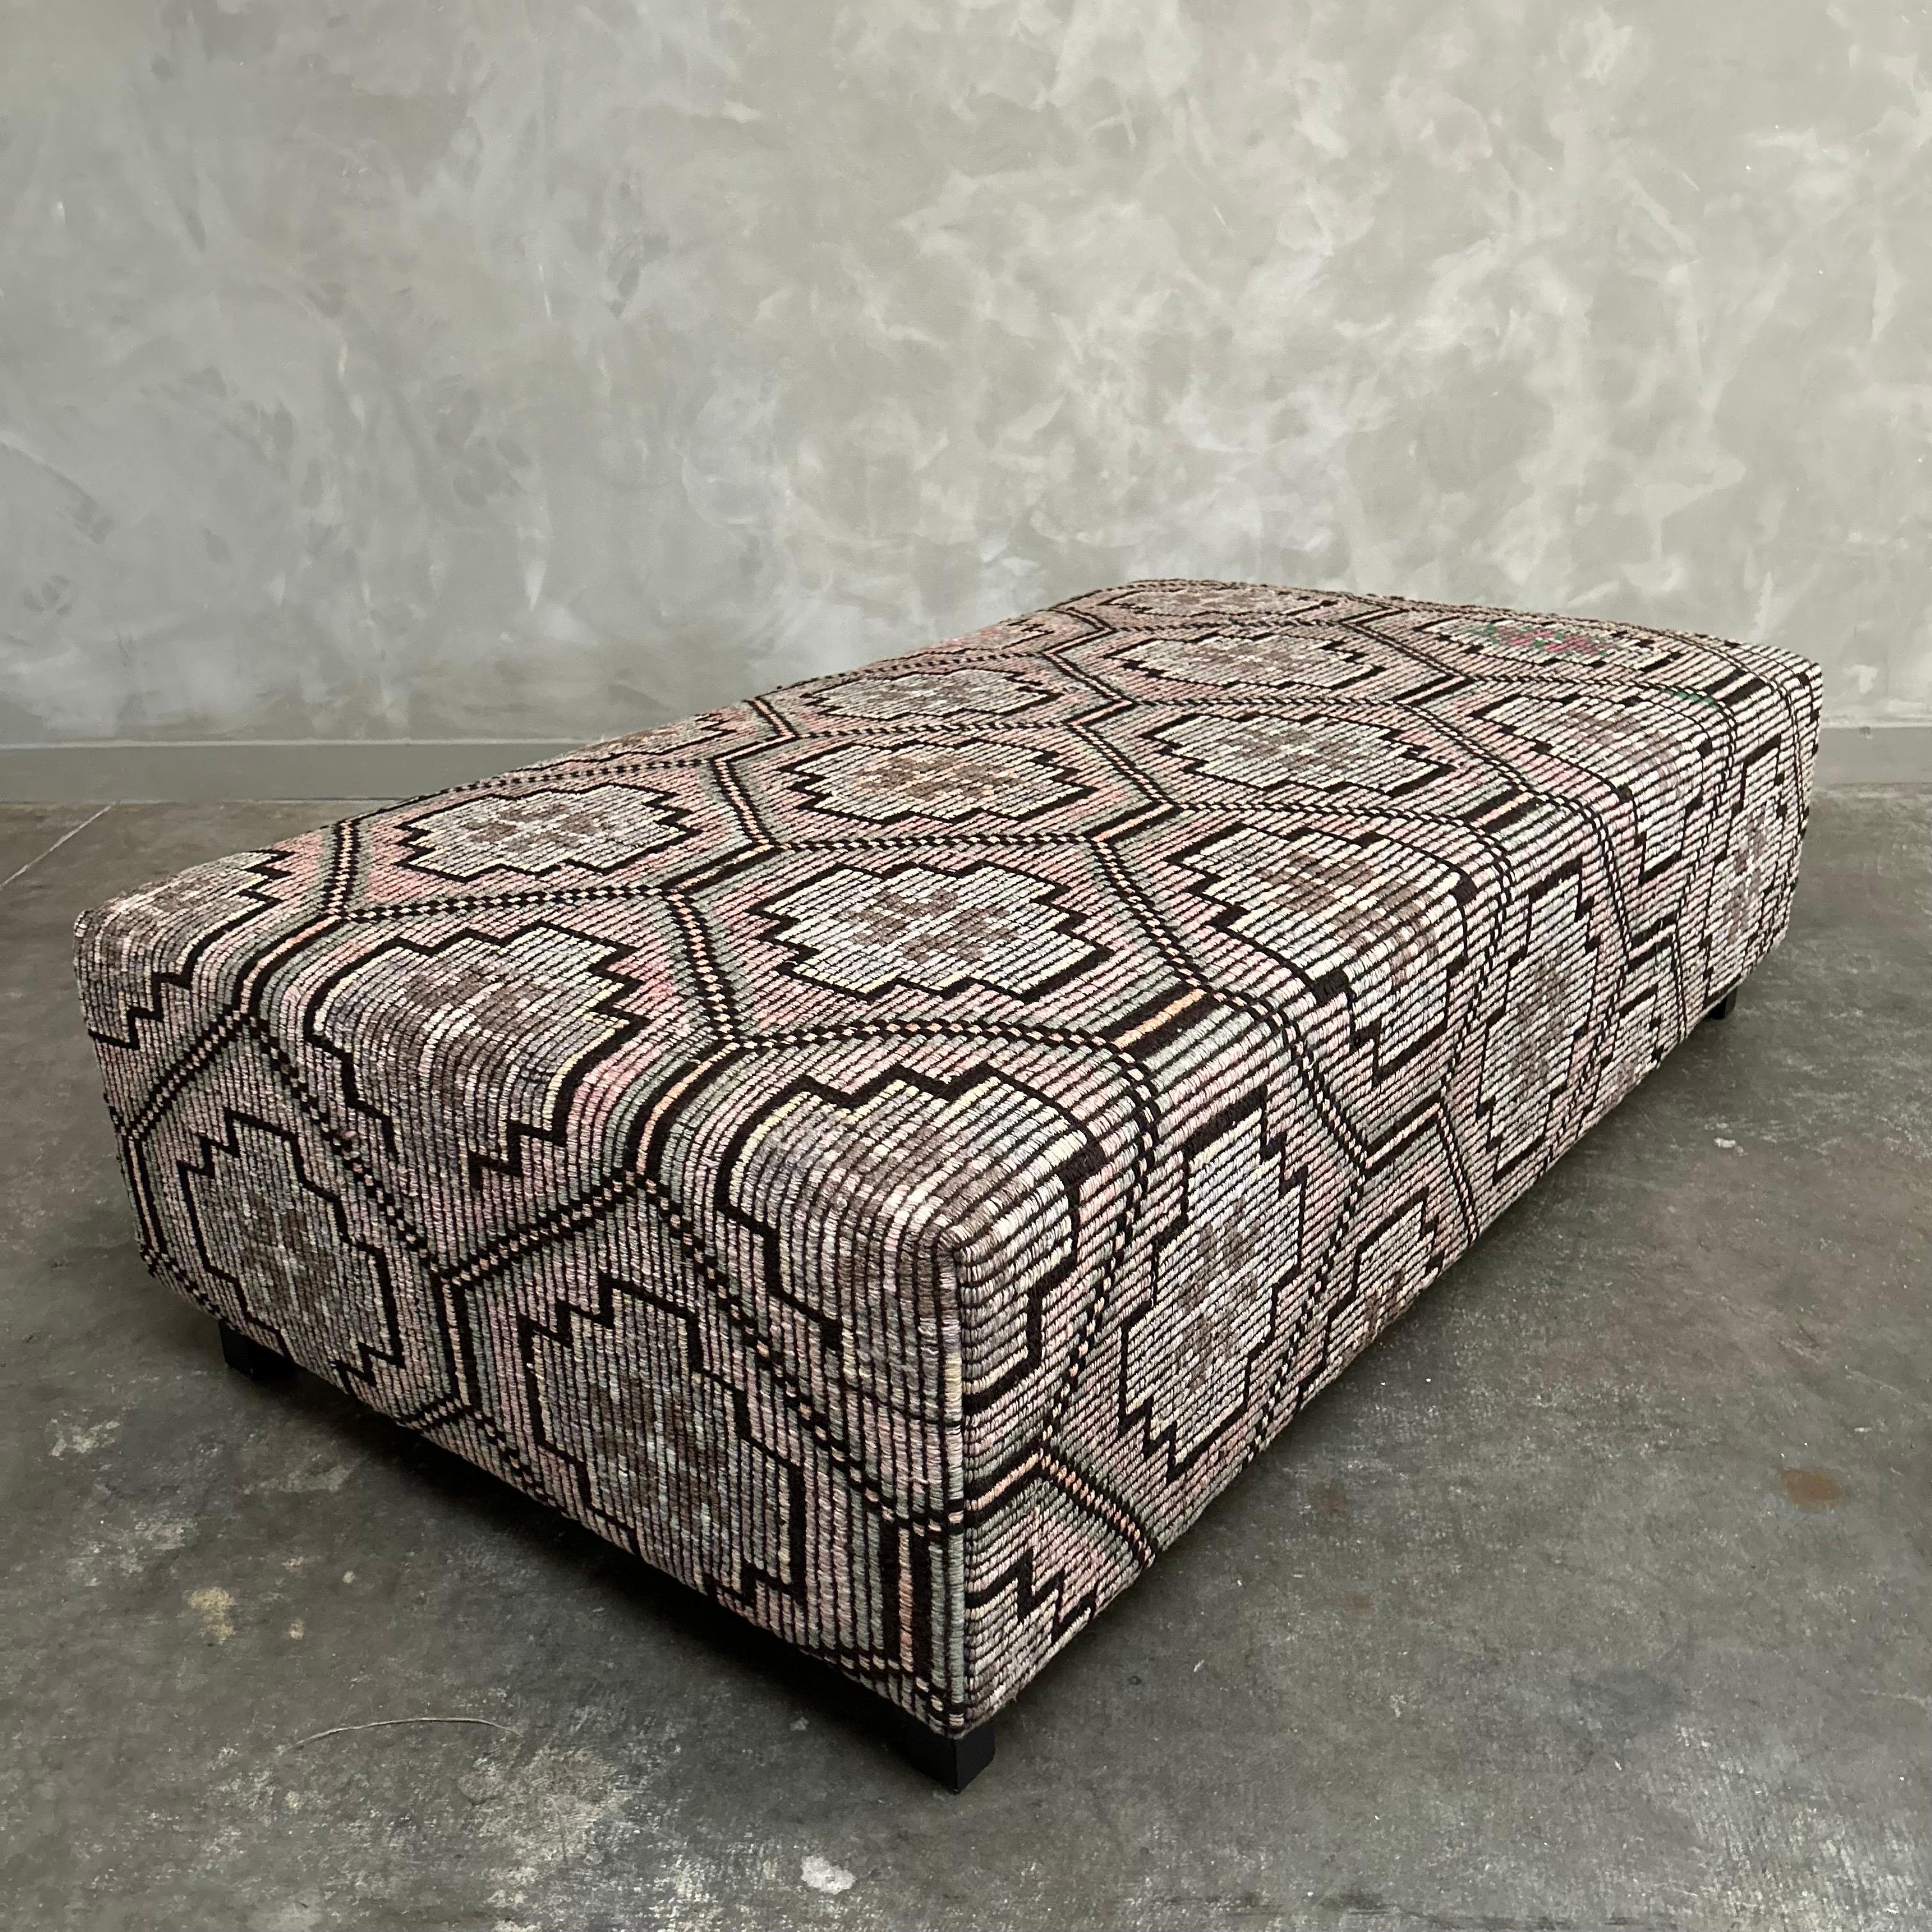 Schöne Custom Made Cube Ottomane aus einem Vintage türkischen Hanf und Wolle Teppich, in braun, gelb, verblasst rosa, rosa, grau, taupes mit Holzkohle Färbungen gemacht. Originalnähte, mit einer Overlock genäht, um ein Aufreißen der Nähte zu